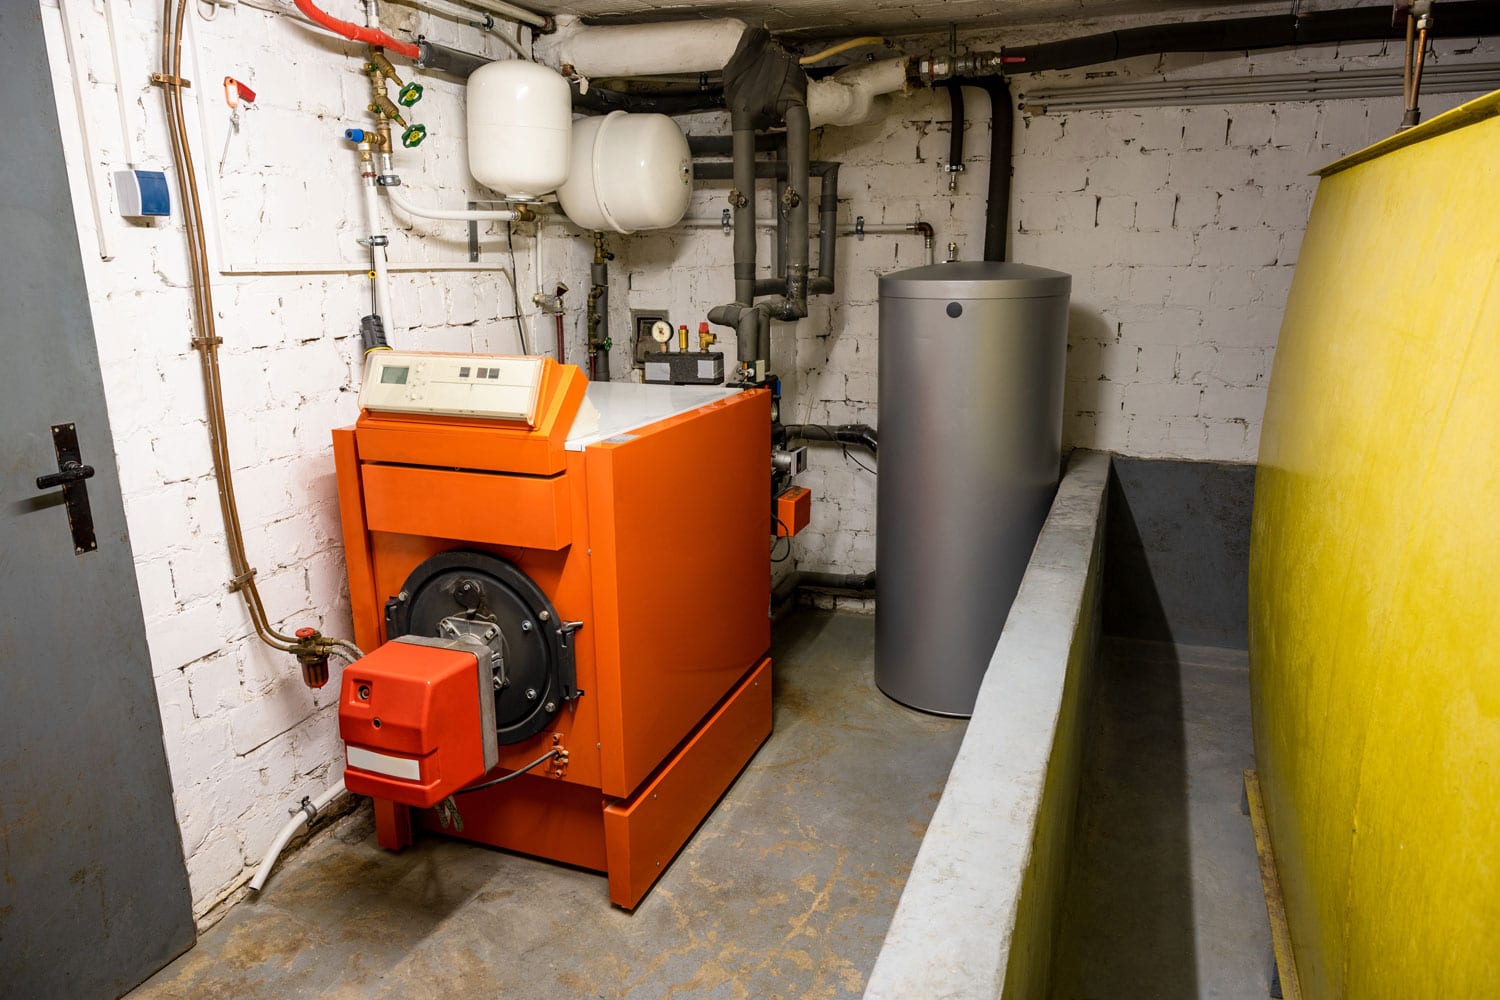 Oil heater in the boiler room